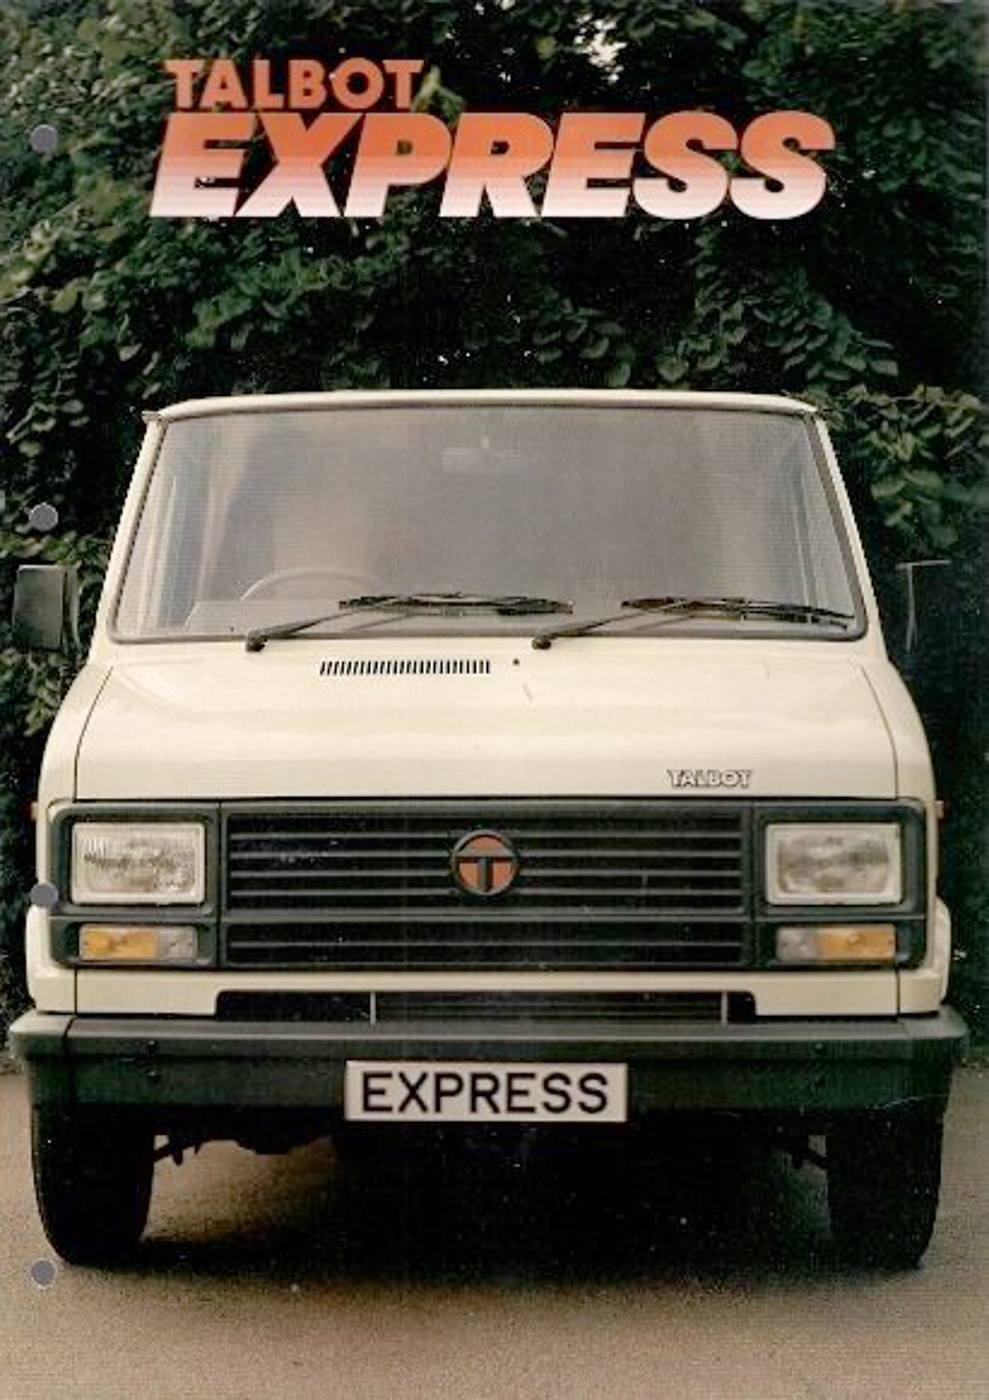 Talbot Express (1982)